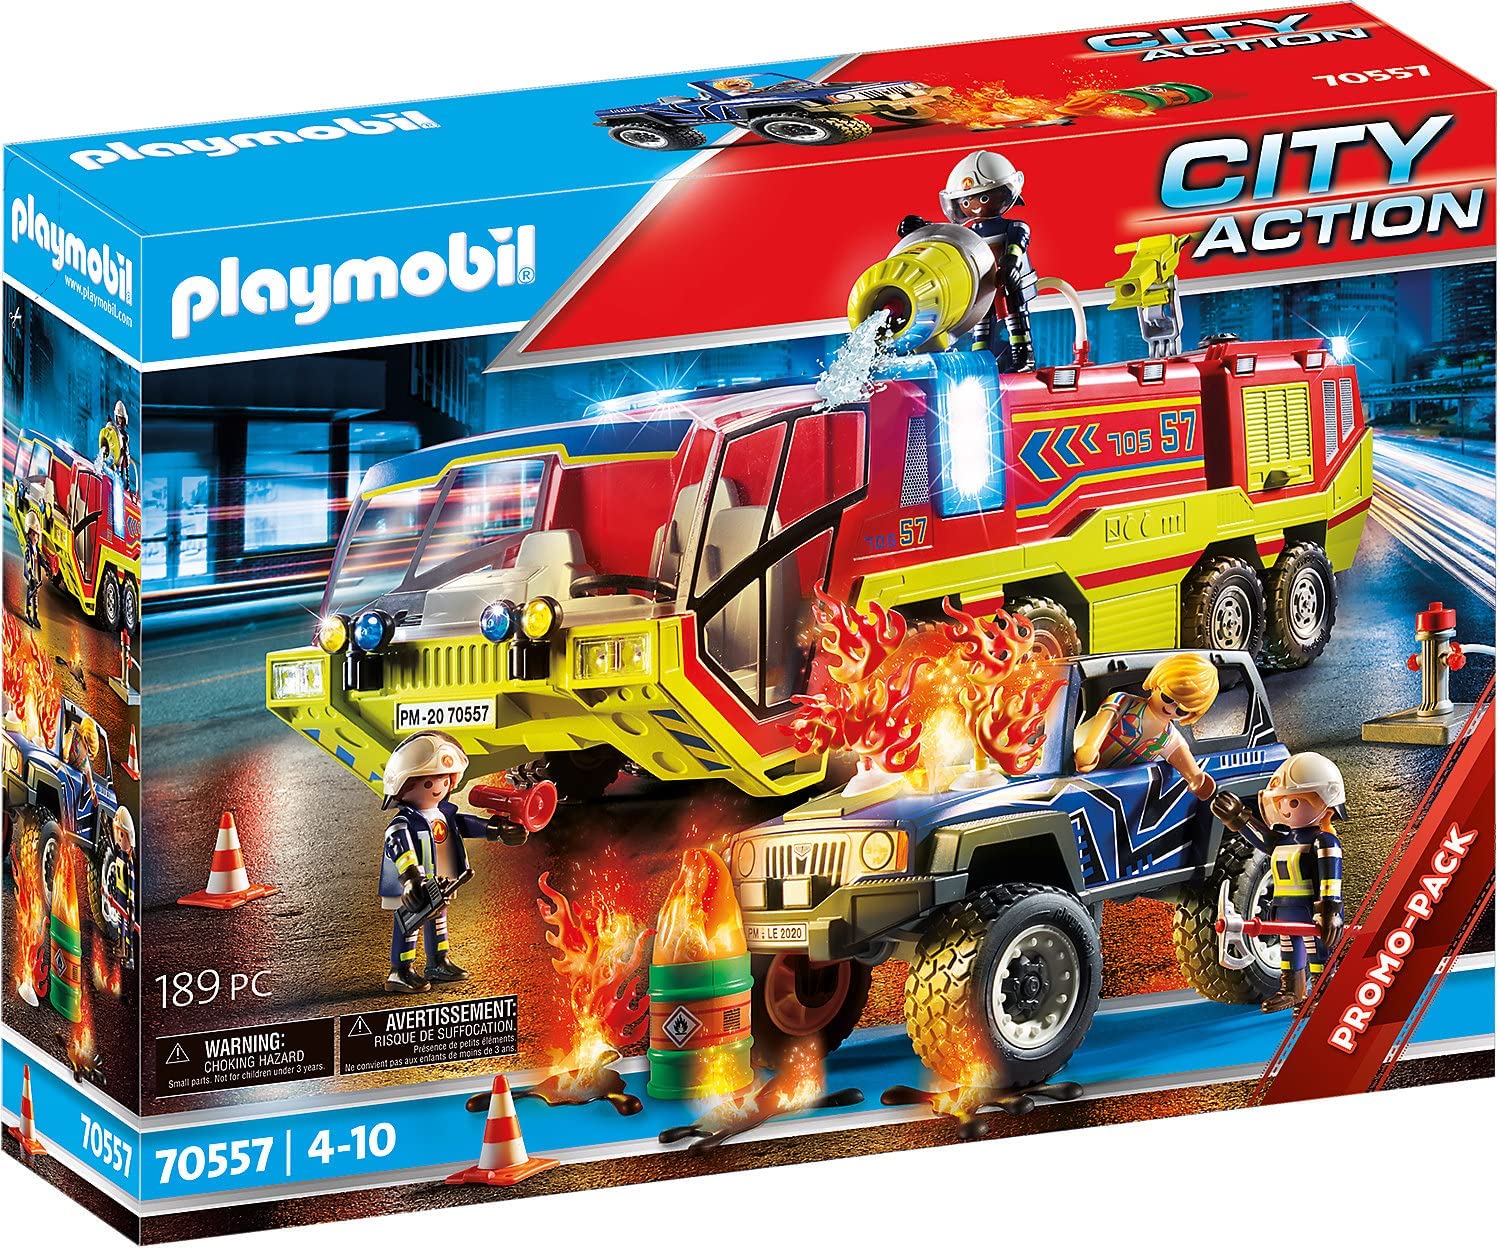 Playmobil - 70557 - City Action - Camion de Pompiers et véhicule enflammé